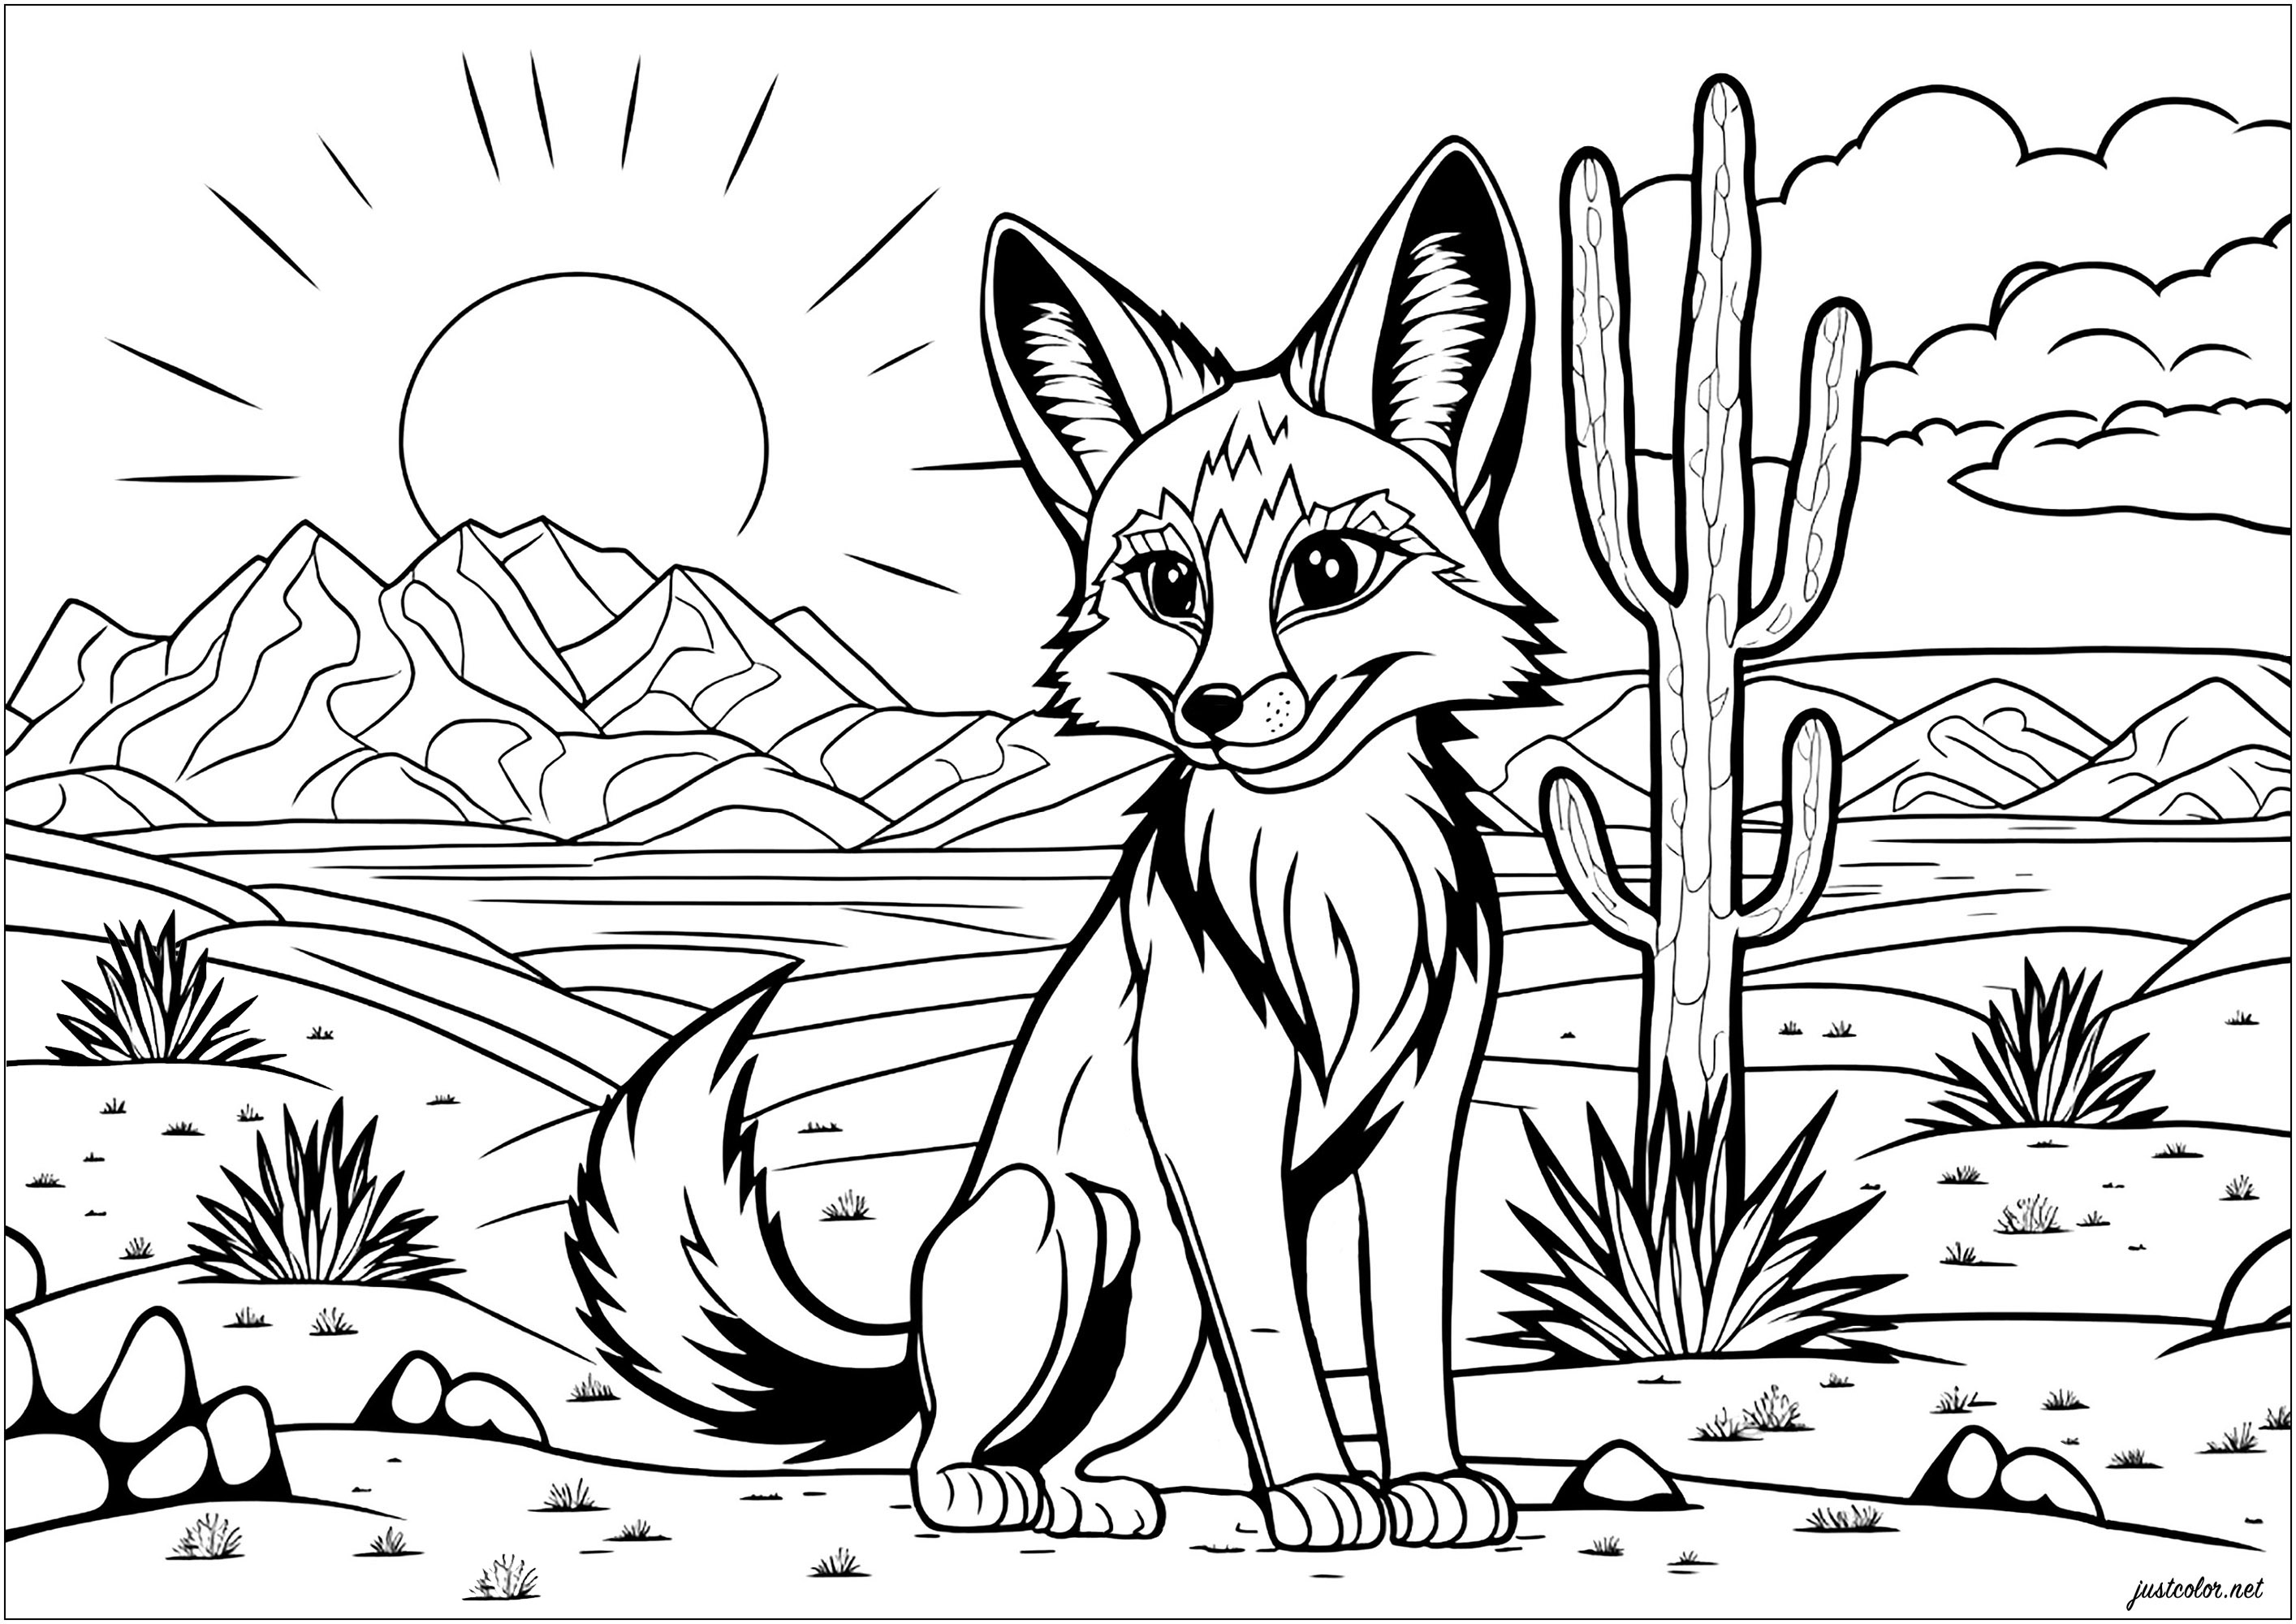 Un majestuoso zorro en el árido desierto. Colorear este zorro en el desierto dará vida a esta criatura única con tonos vibrantes, permitiéndote imaginar cómo sería formar parte de su mundo salvaje.